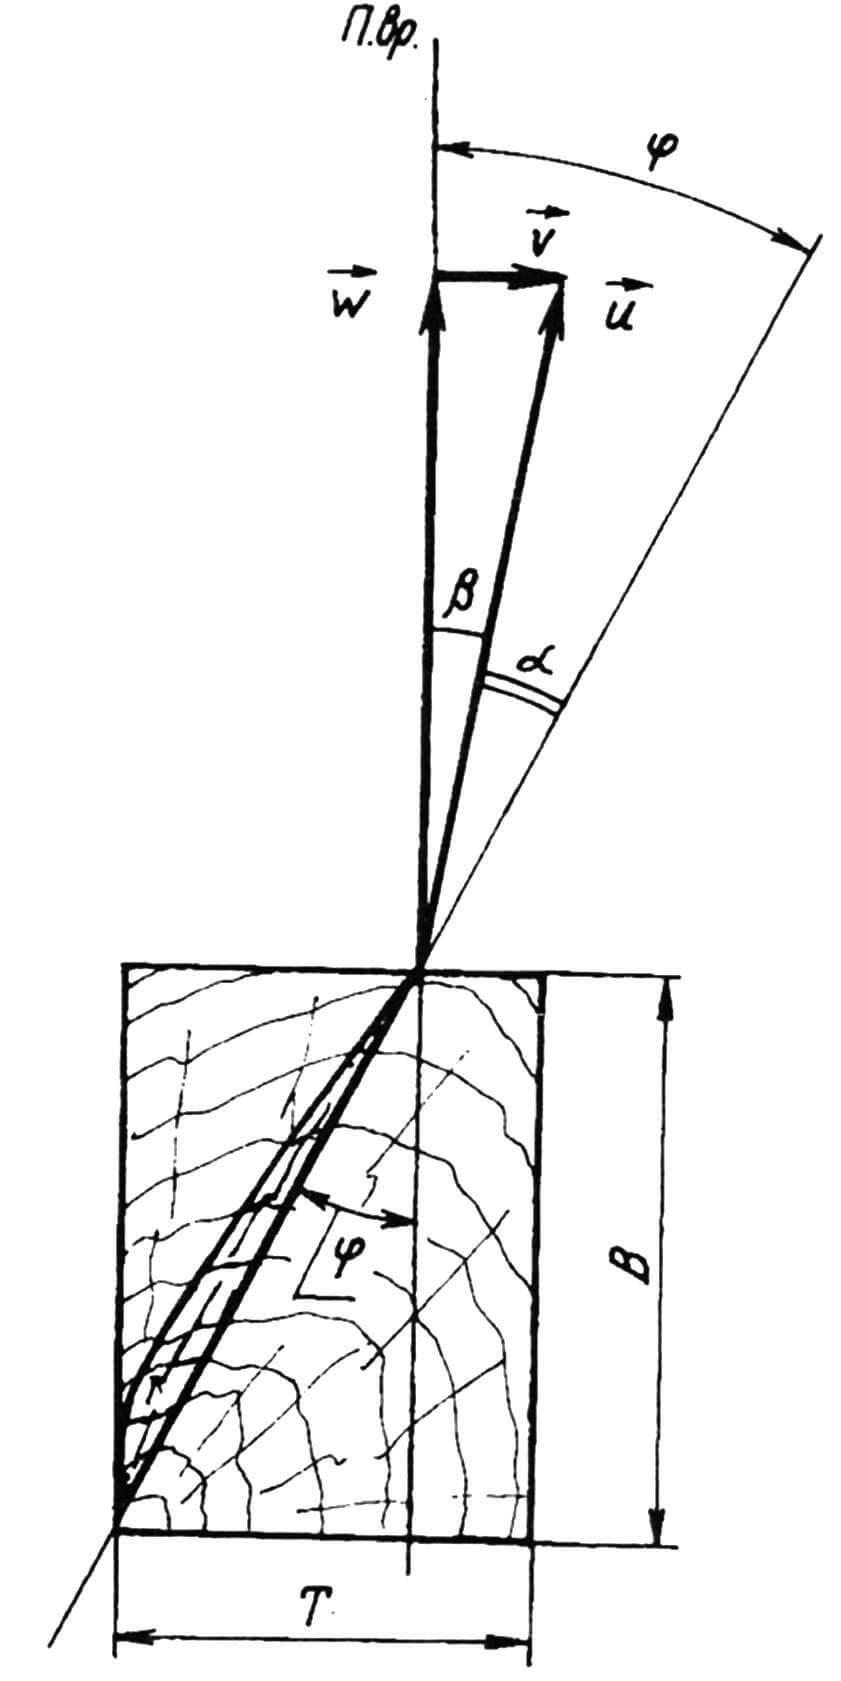 Схема, поясняющая определение углов α, β и φ: П.вр. — плоскость вращения винта; W — вектор линейной скорости вращательного движения лопасти в данном сечении; V — вектор поступательной скорости винта (скорость полета СЛА); U — вектор скорости набегающего на данное сечение потока воздуха; В и Т — ширина и толщина заготовки для изготовления винта.